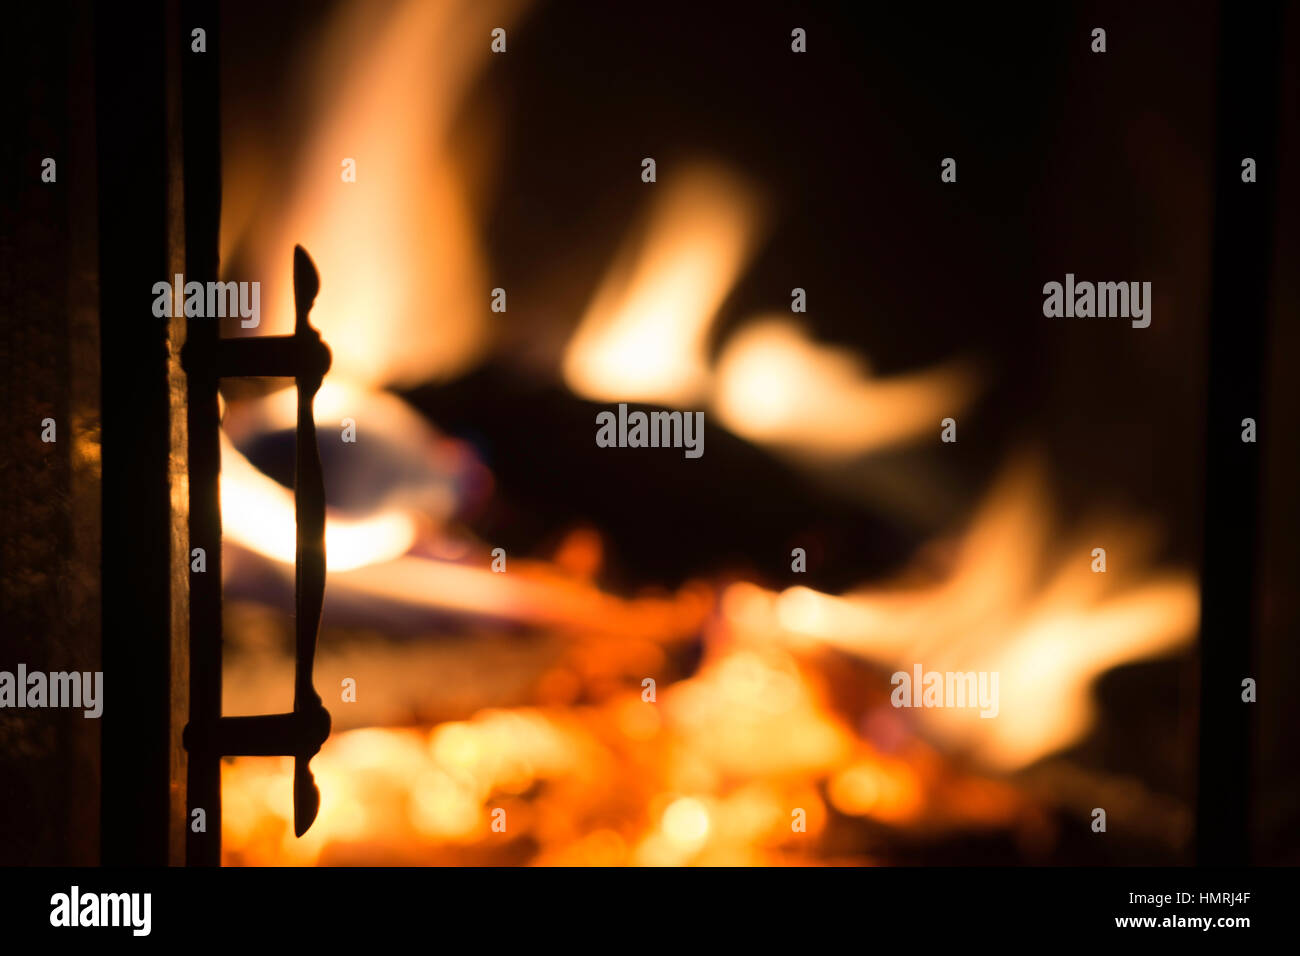 Porte cheminée en silhouette avec feu de cheminée en arrière-plan, arrière-plan agréable Banque D'Images